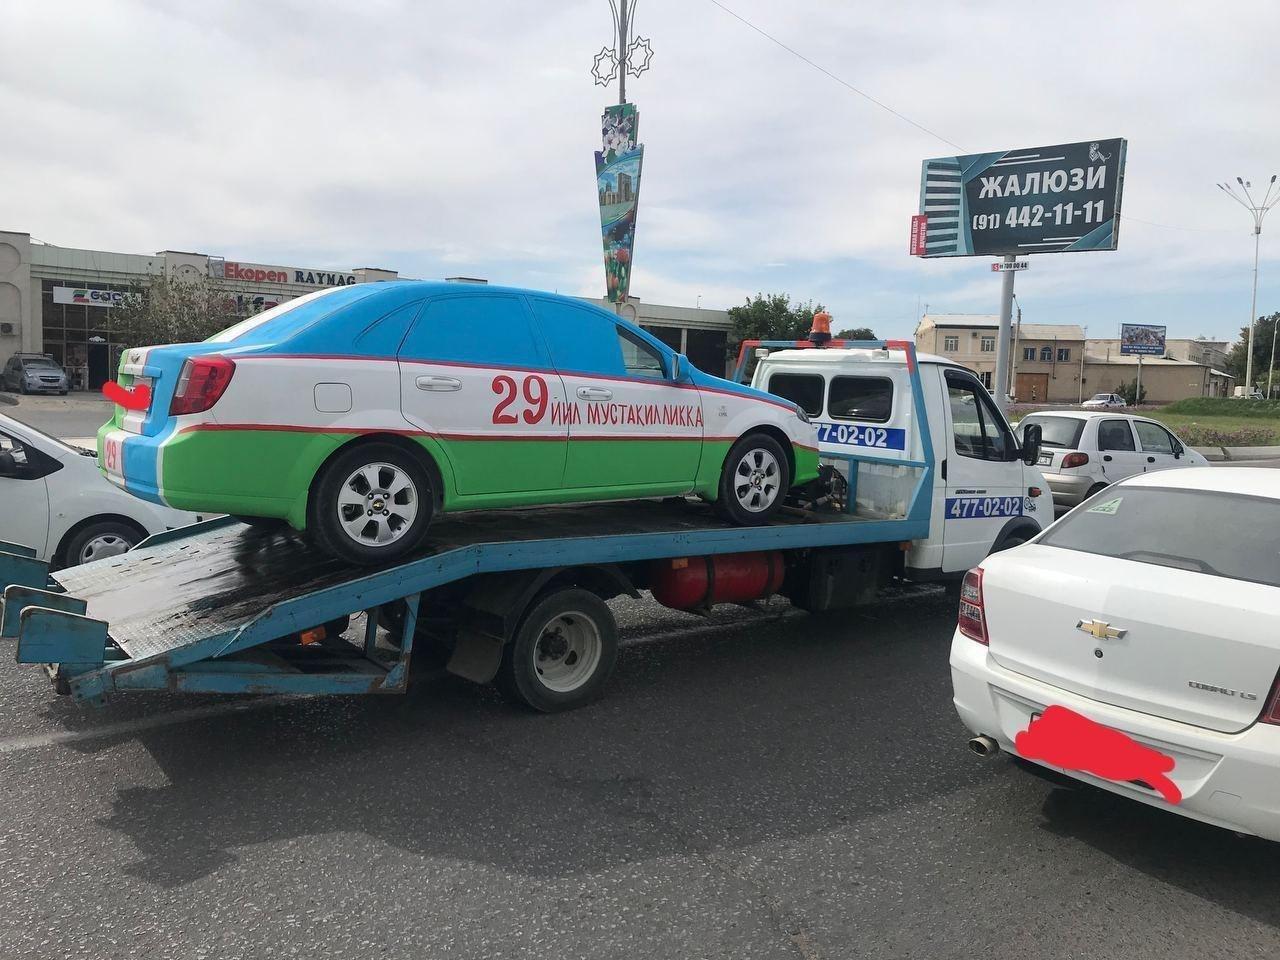 Узбекистанский флаг на машину